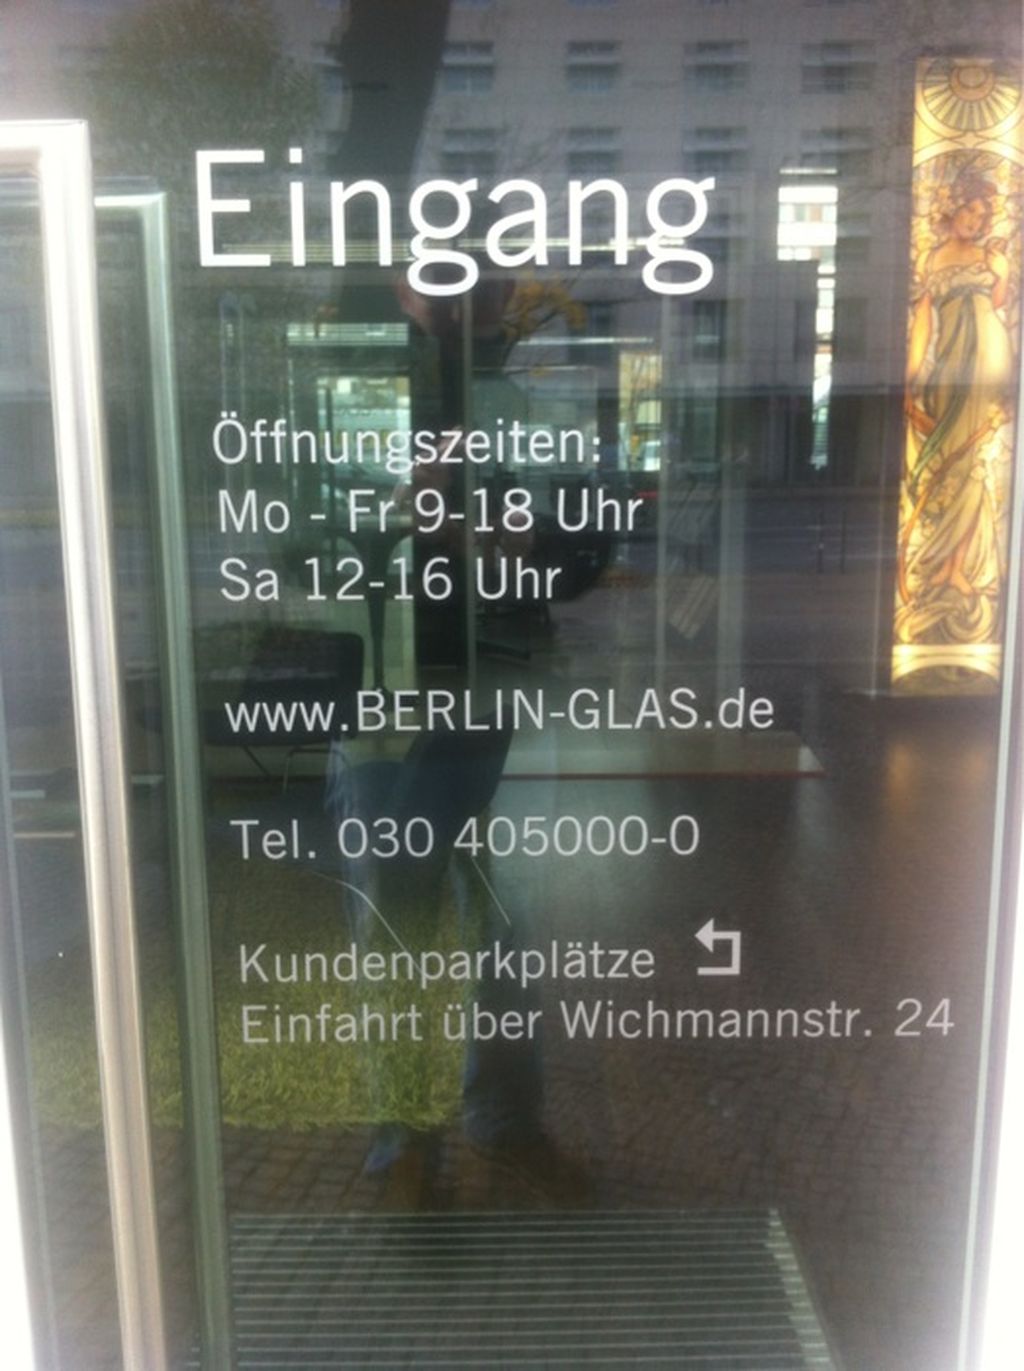 Nutzerfoto 1 Berlin-Glas.de Mergner & Speidel Glaserei u. Kunstglaserei OHG Glaserei